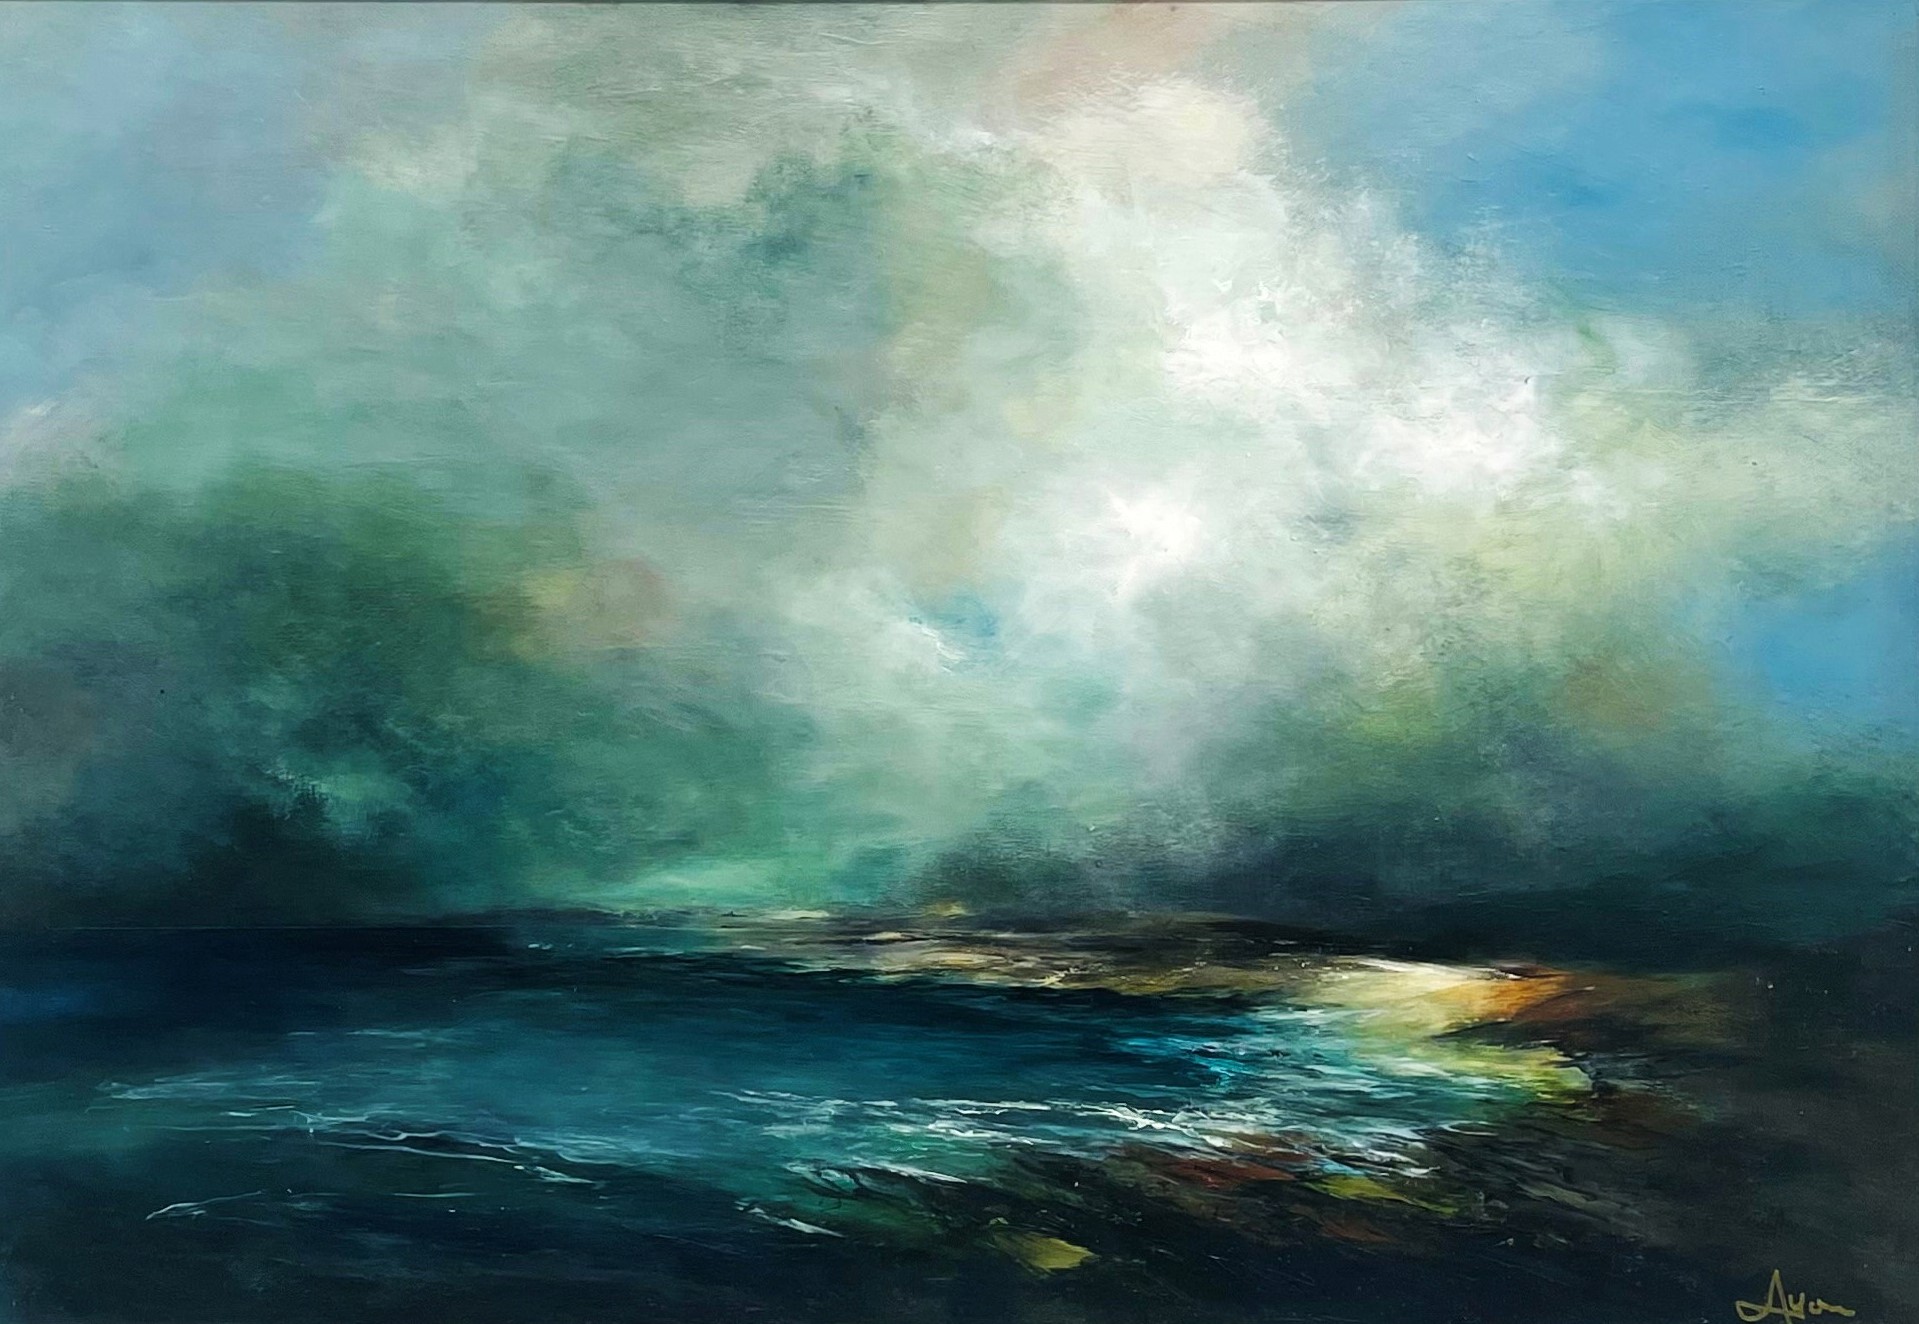 'Tayinloan, Kintyre' by artist Alison Lyon